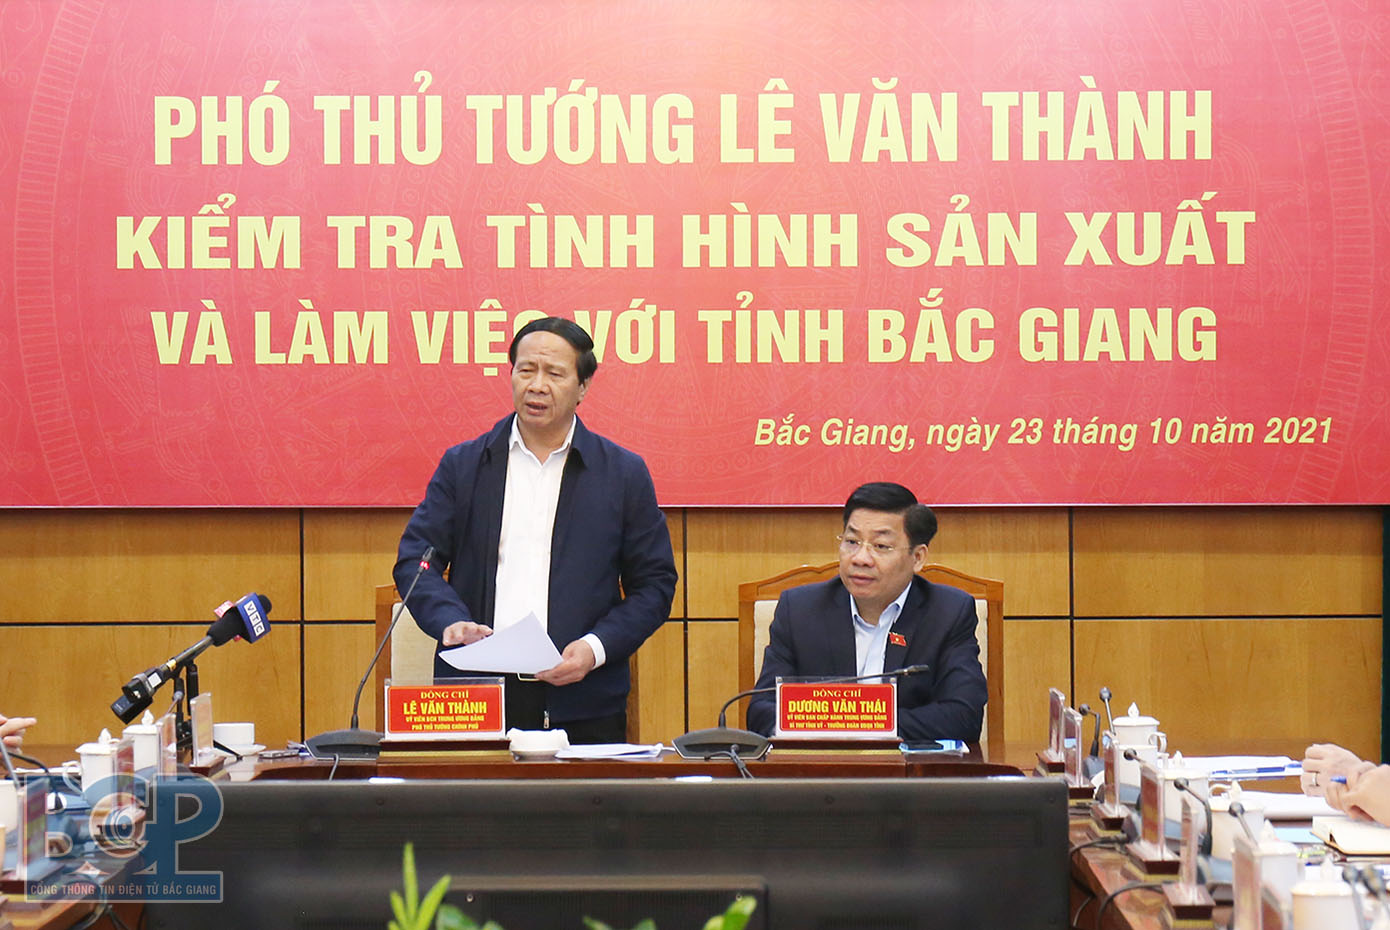 Phó Thủ tướng Chính phủ Lê Văn Thành: Cả nước đều mong muốn dập dịch nhanh như Bắc Giang